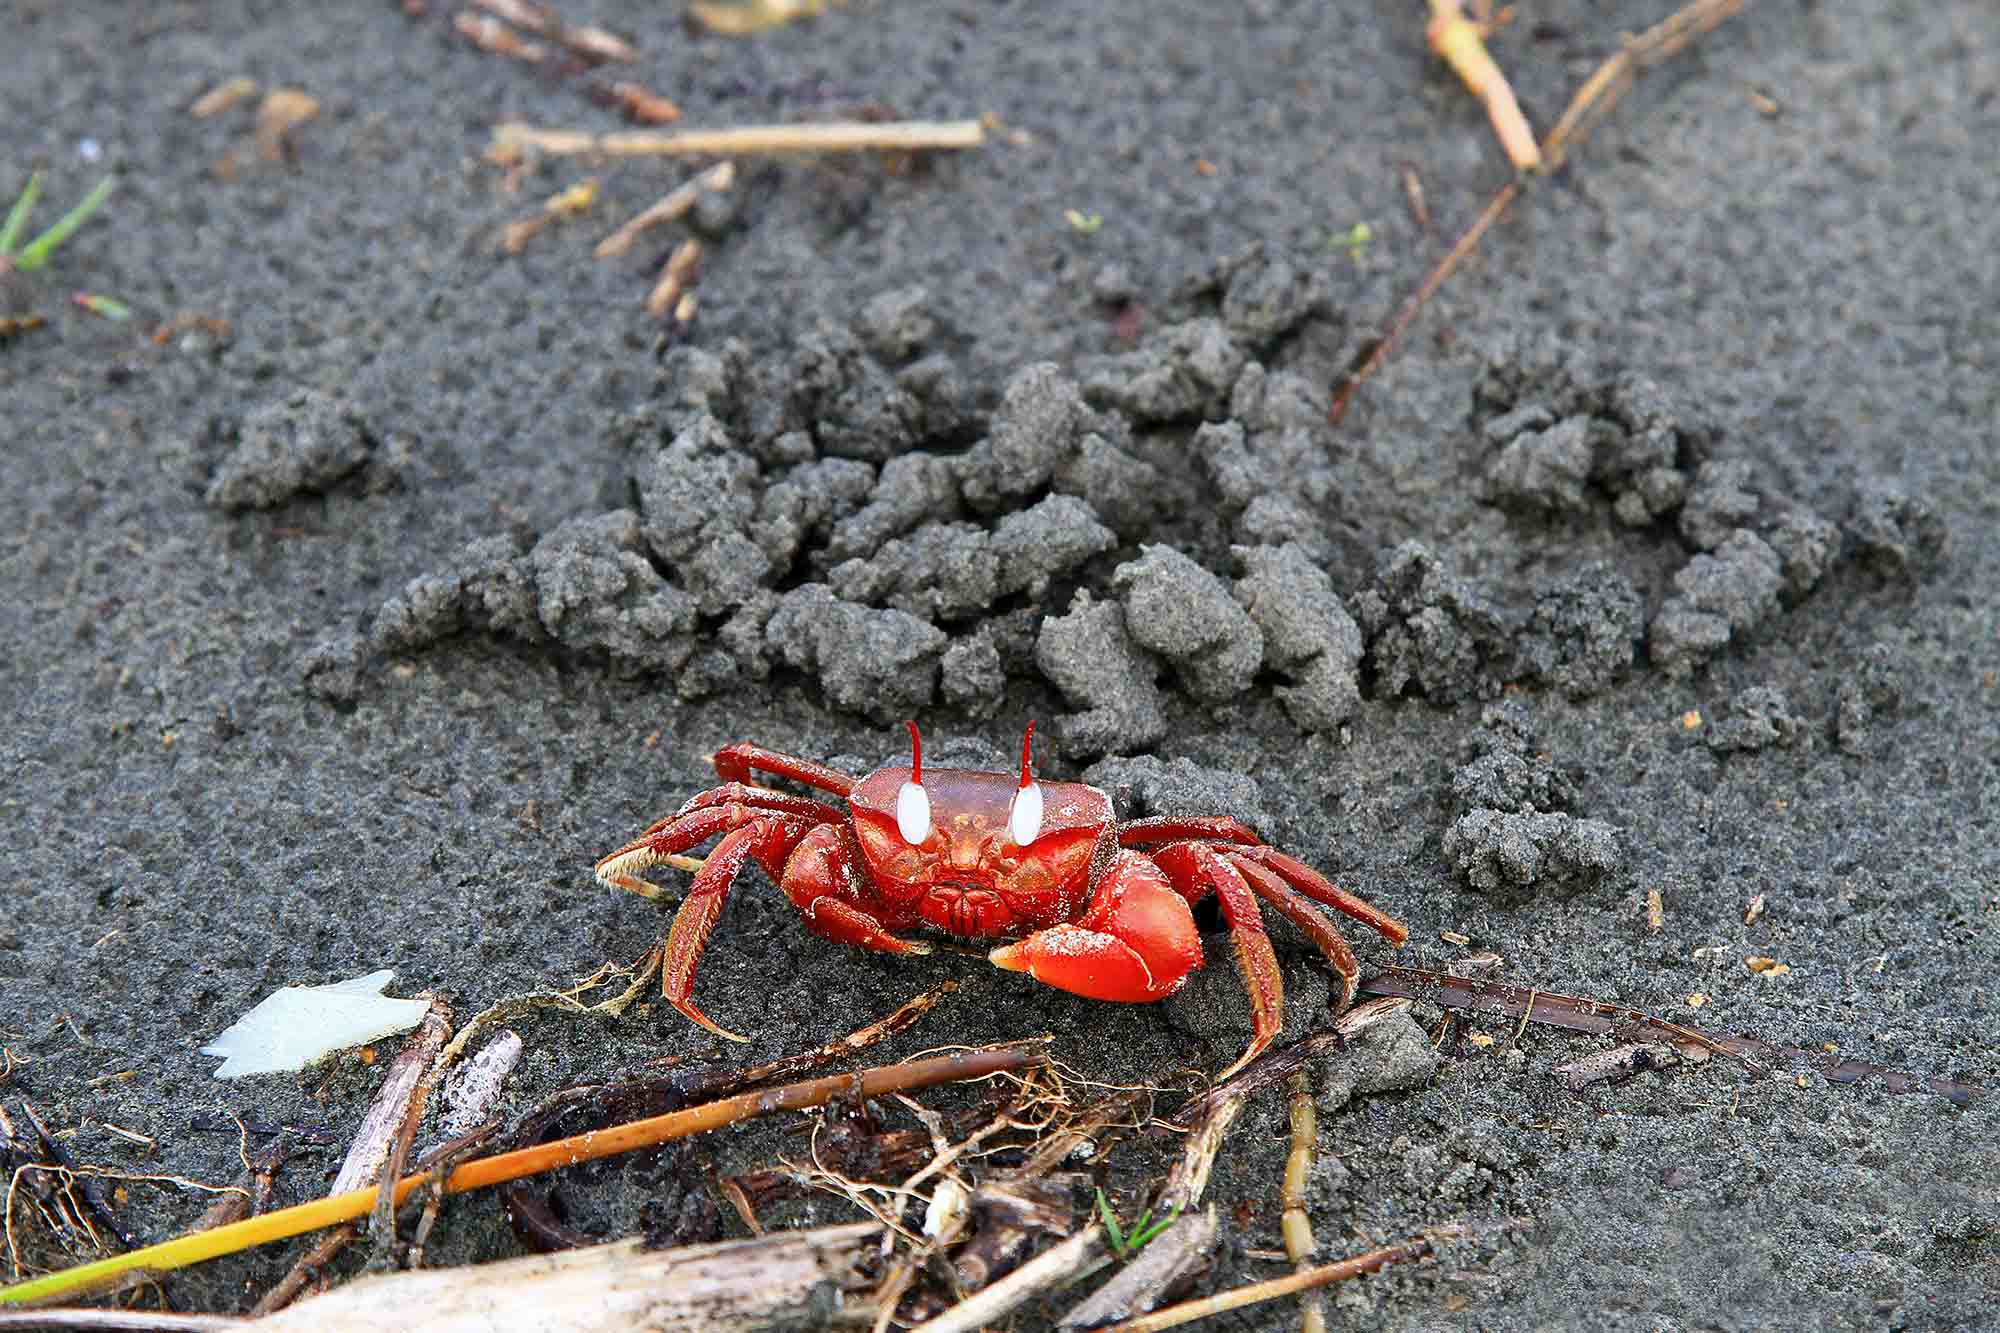 Red crab on Kuakata beach. © Ulli Maier & Nisa Maier